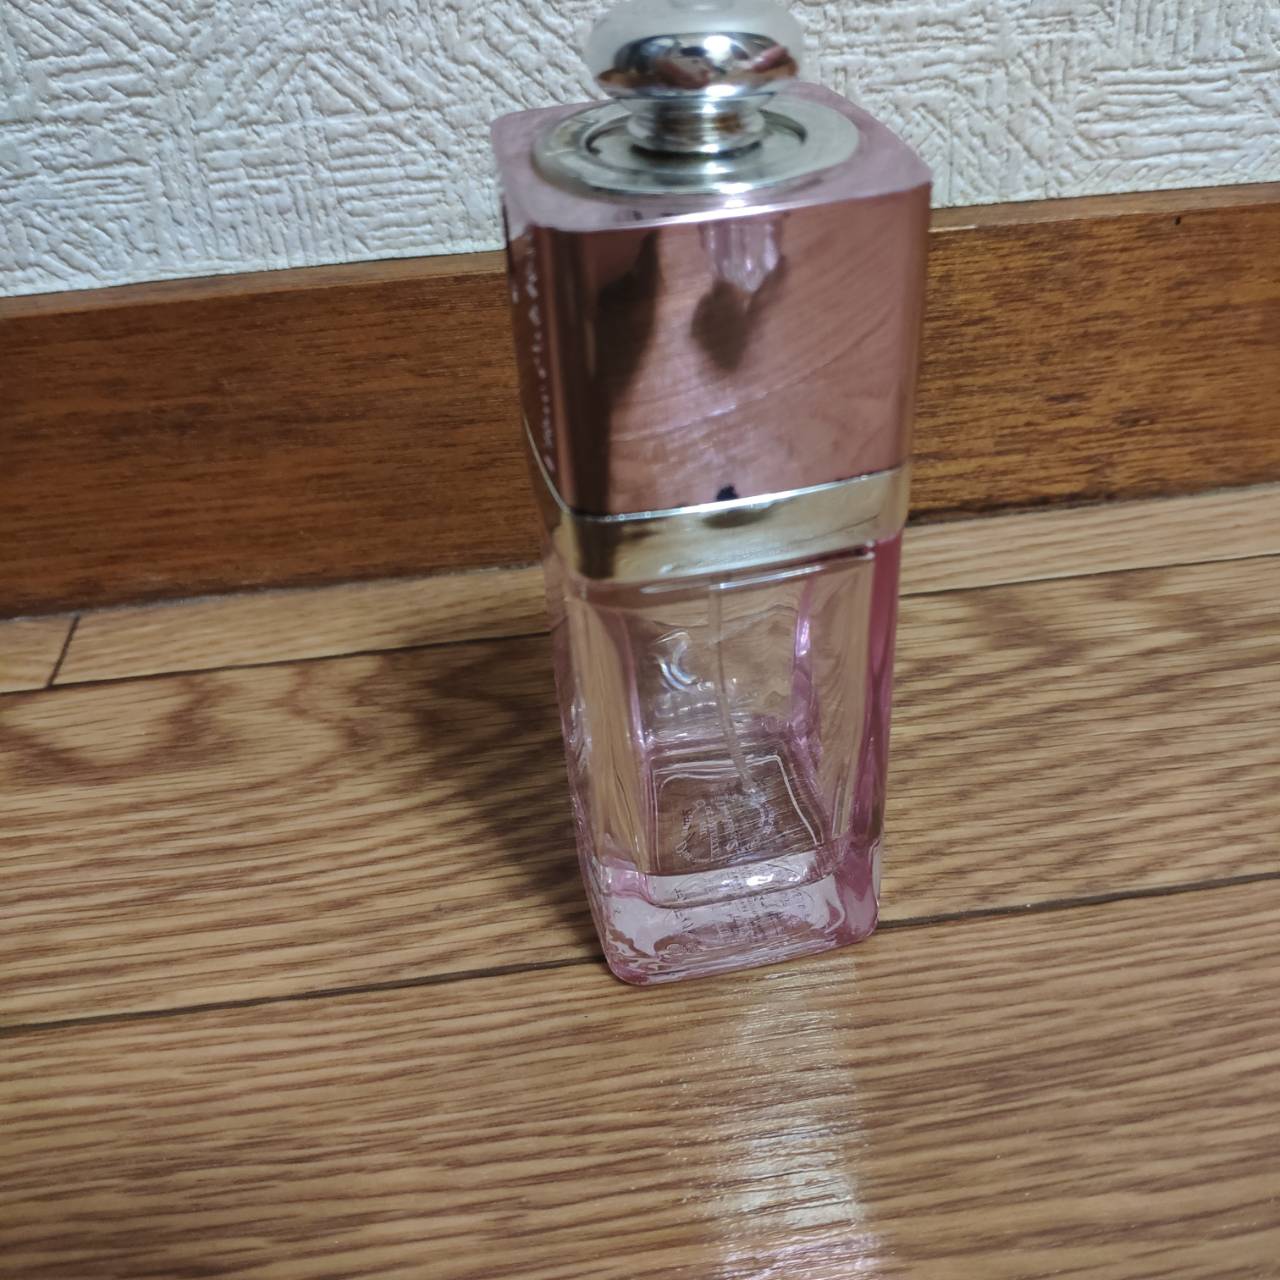 クリスチャンディオール(Christian Dior)の香水「アディクトオーフレッシュ」はどんな香り？使用芸能人も解説